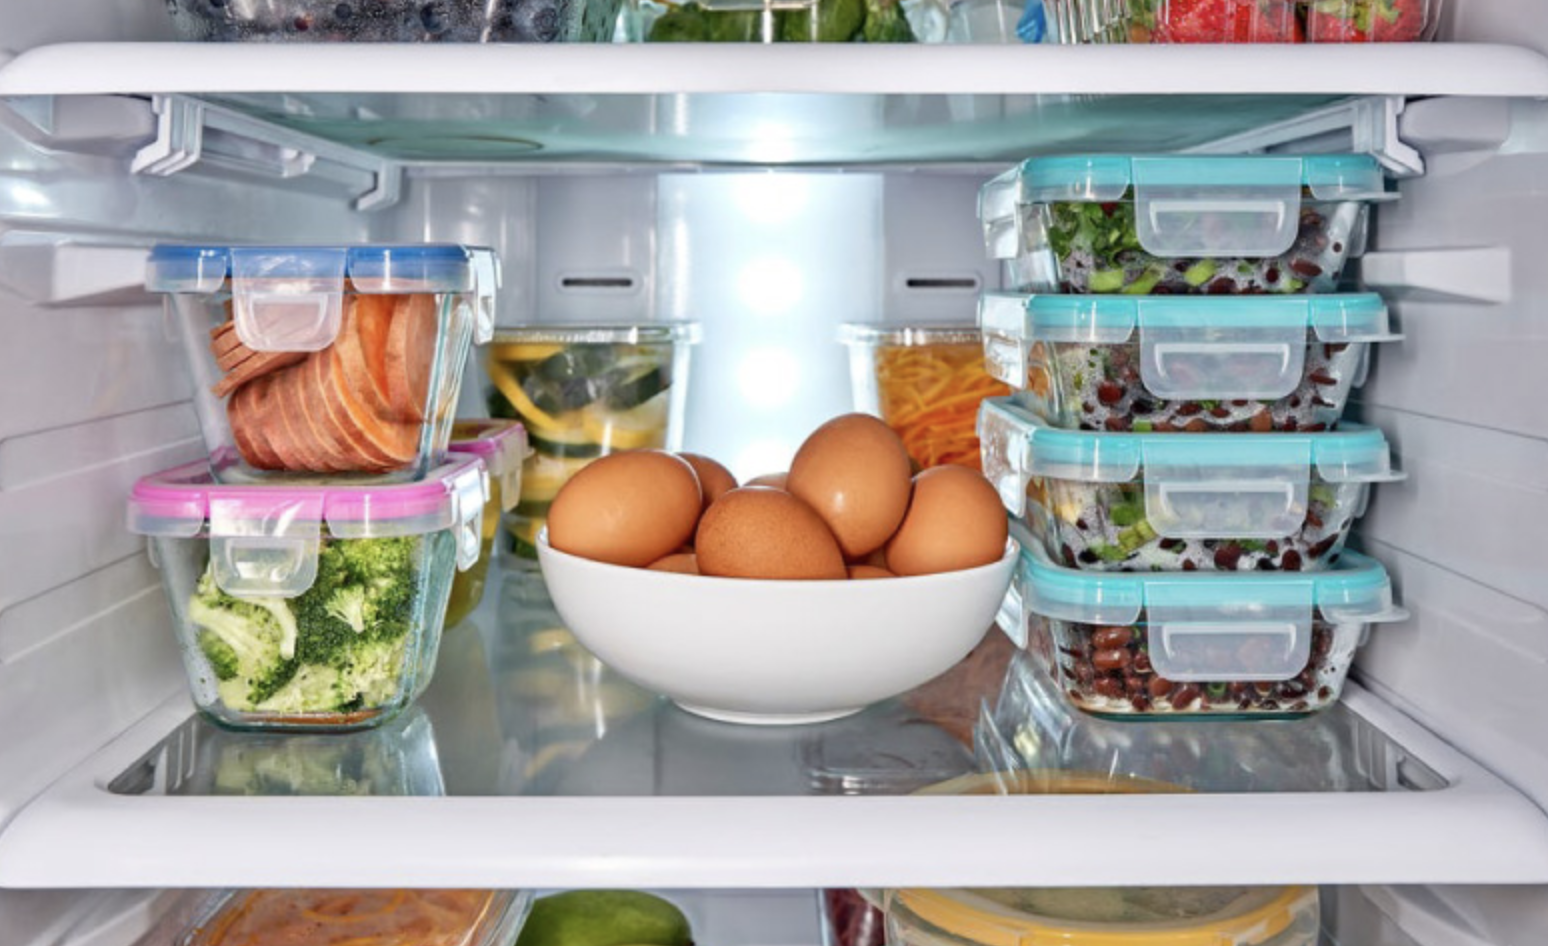 Хранение в холодильнике. Холодильник с продуктами. Хранение продуктов в холодильнике. Проддуктыв холодильнике.